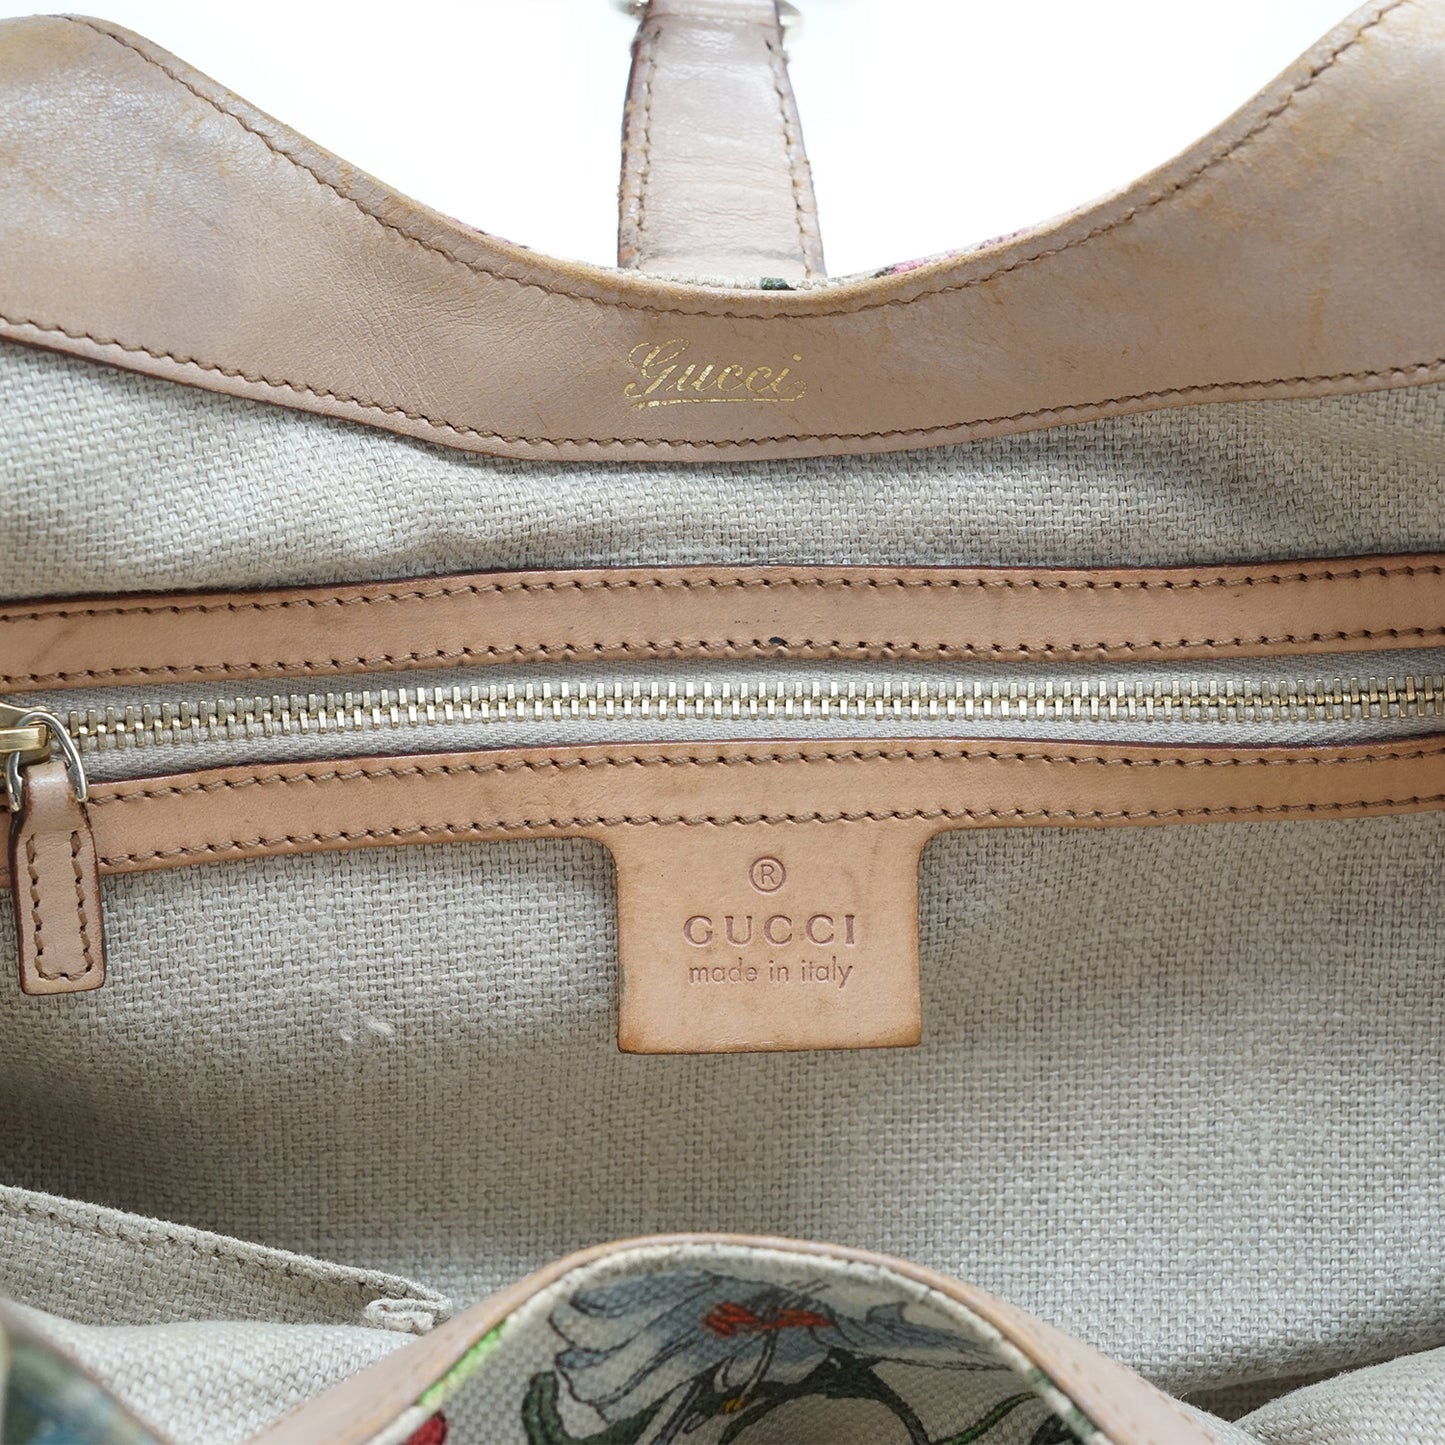 New Jackie Flora Shoulder Bag